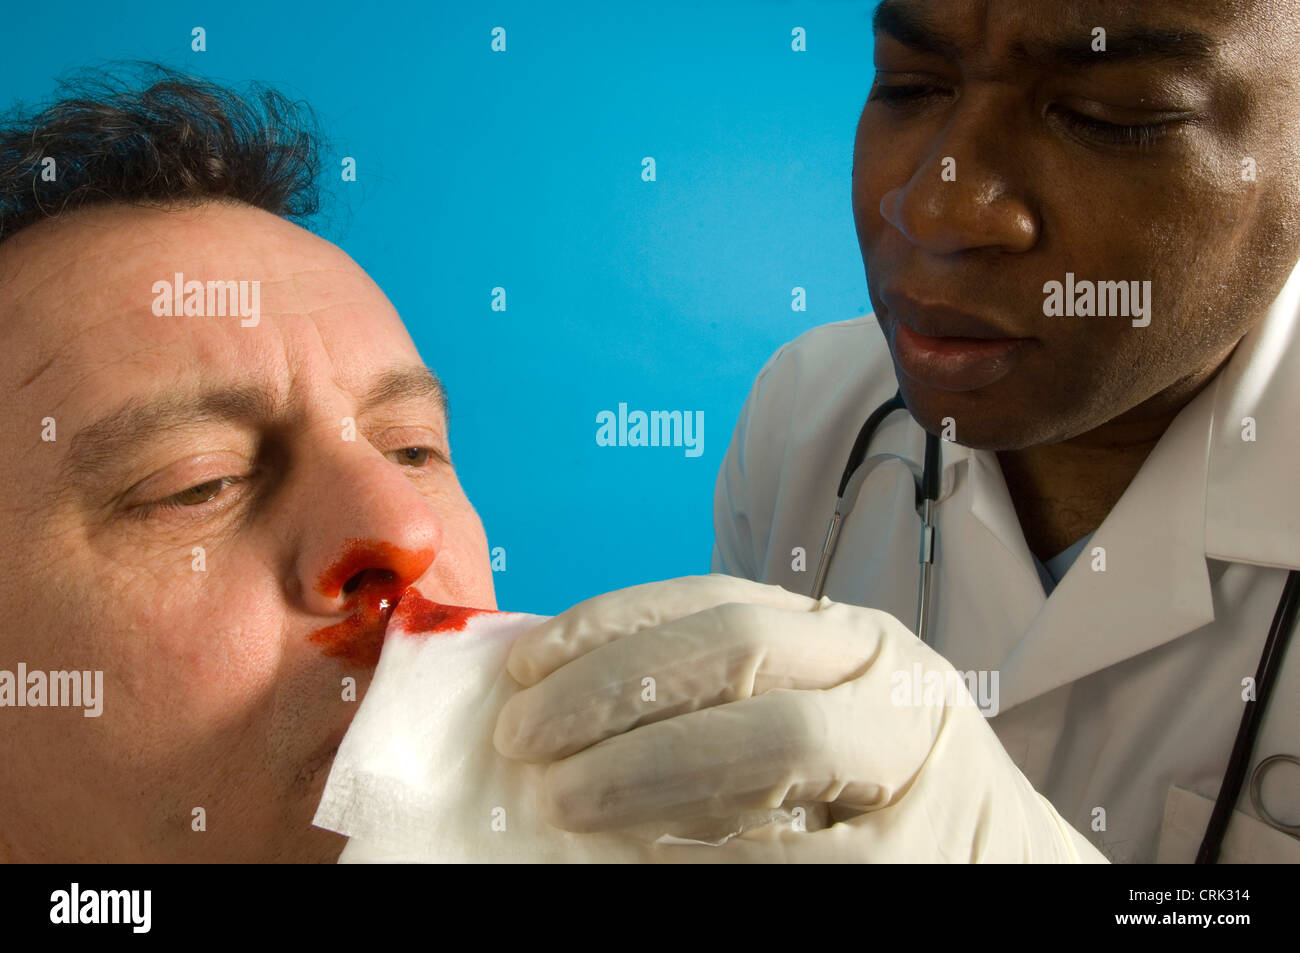 Eine Krankenschwester reinigt blutende Nase des Patienten Stockfoto